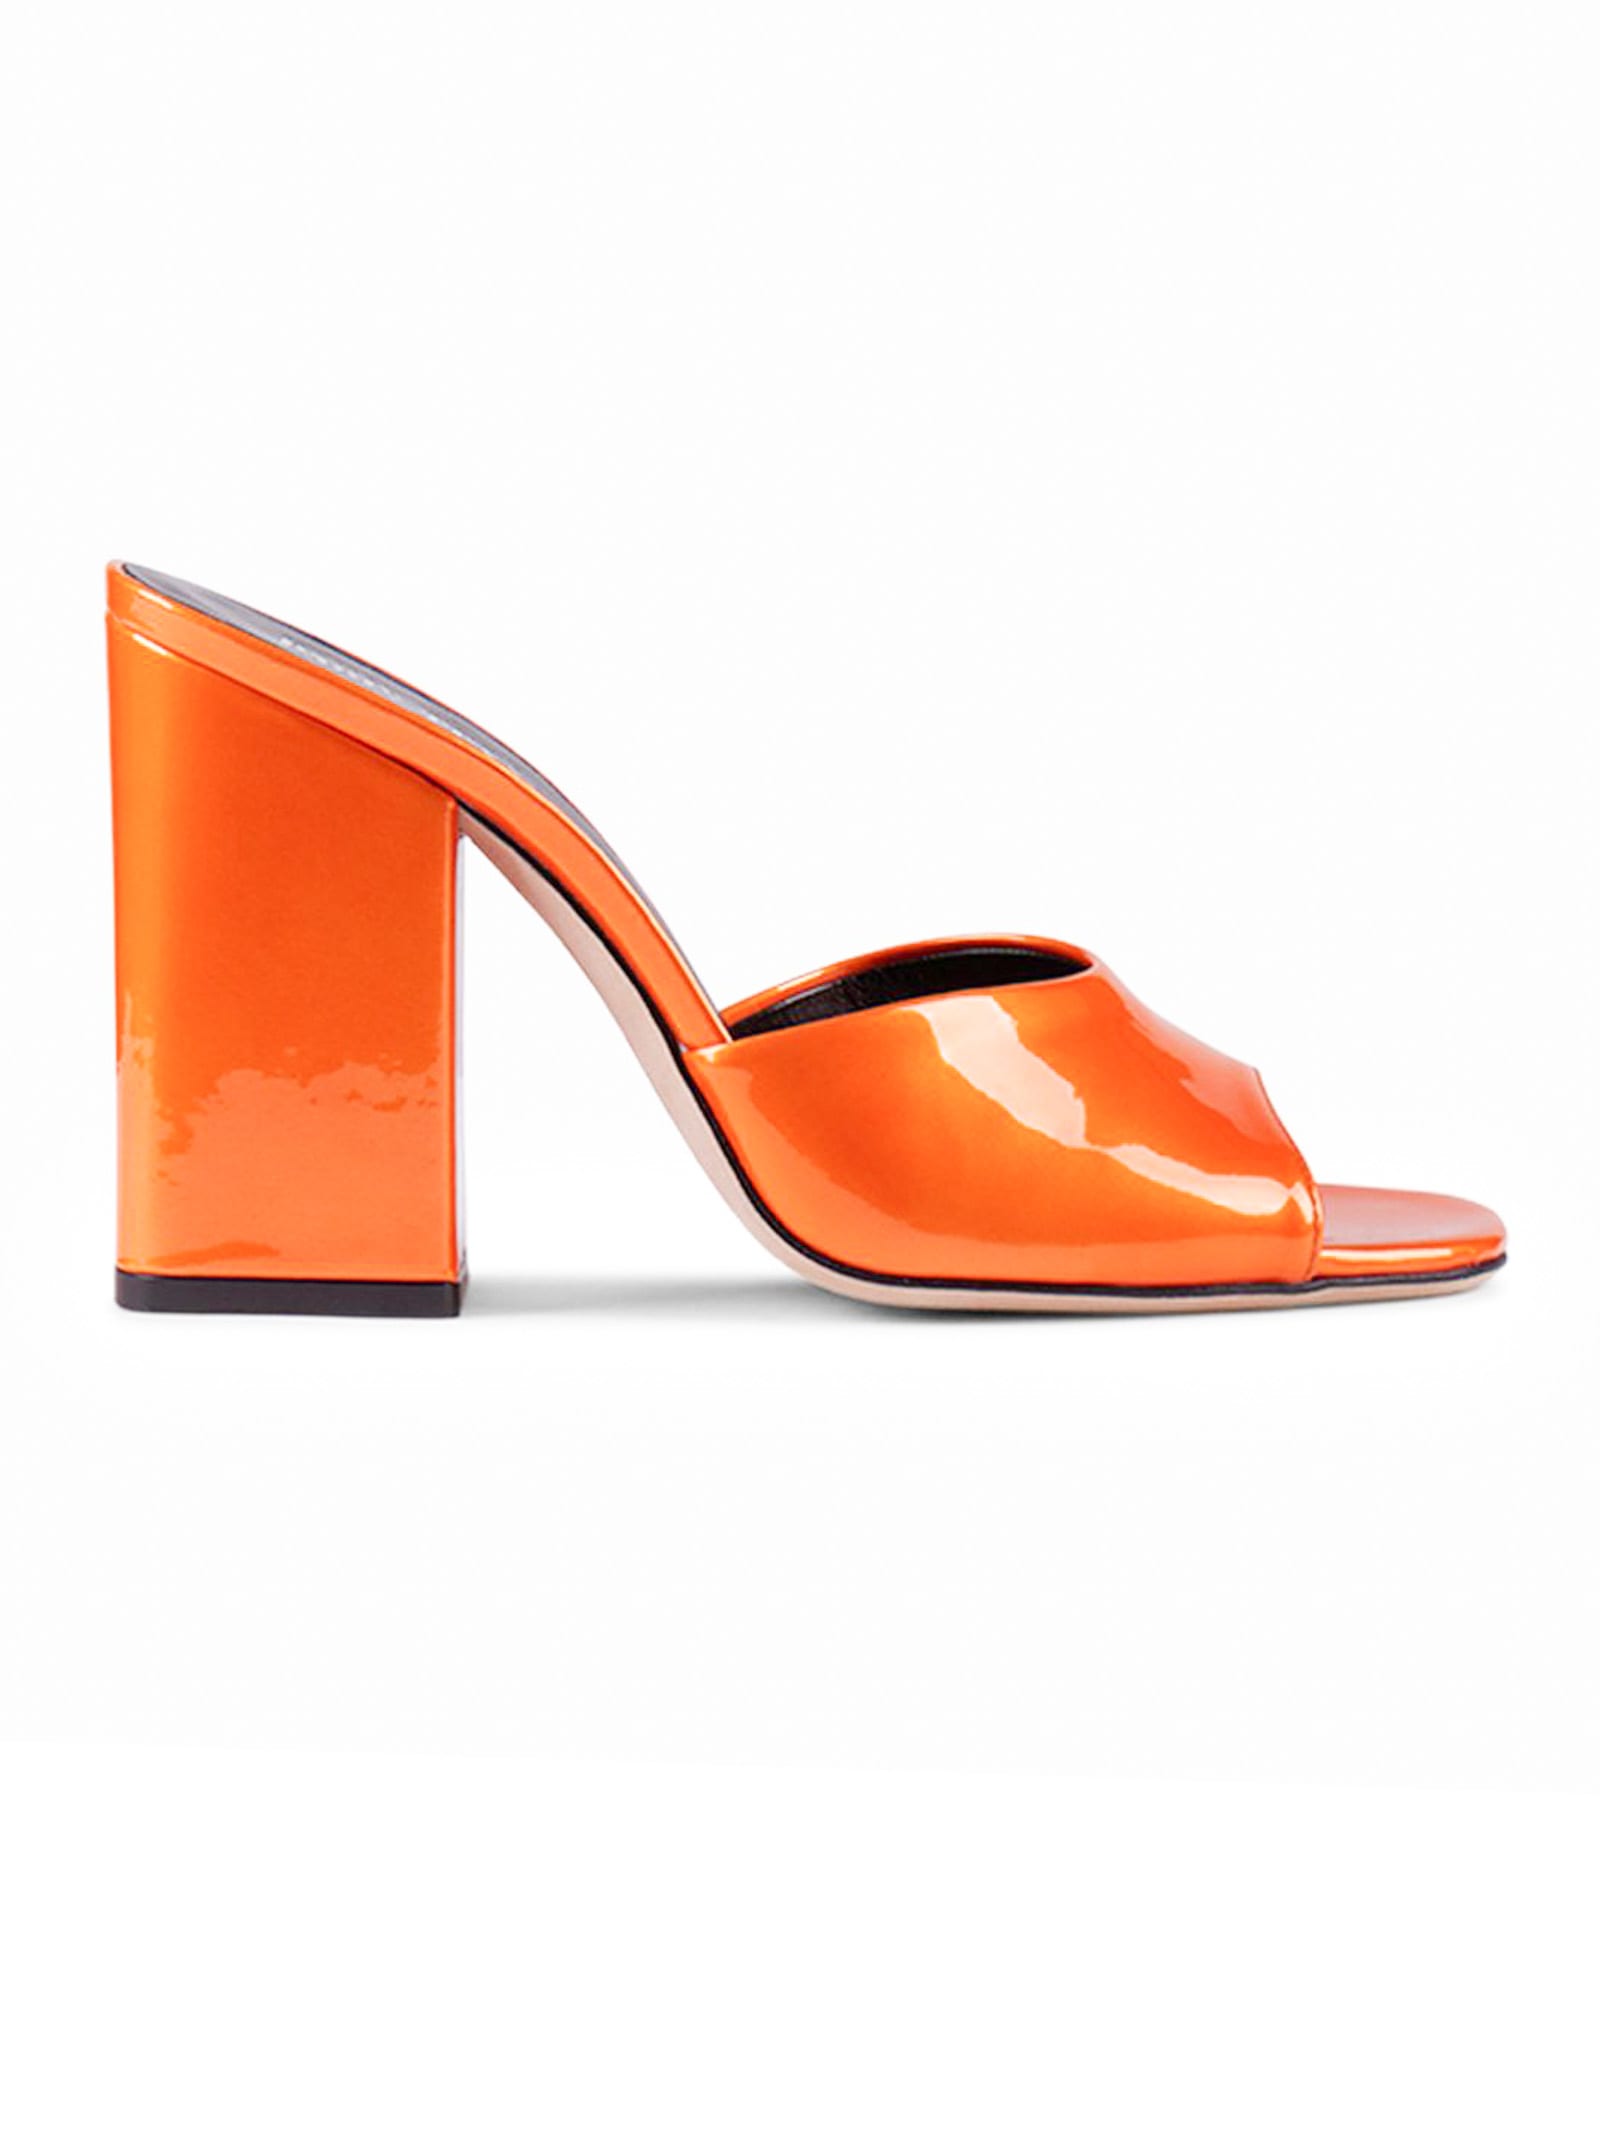 Paris Texas Orange Leather Sandals